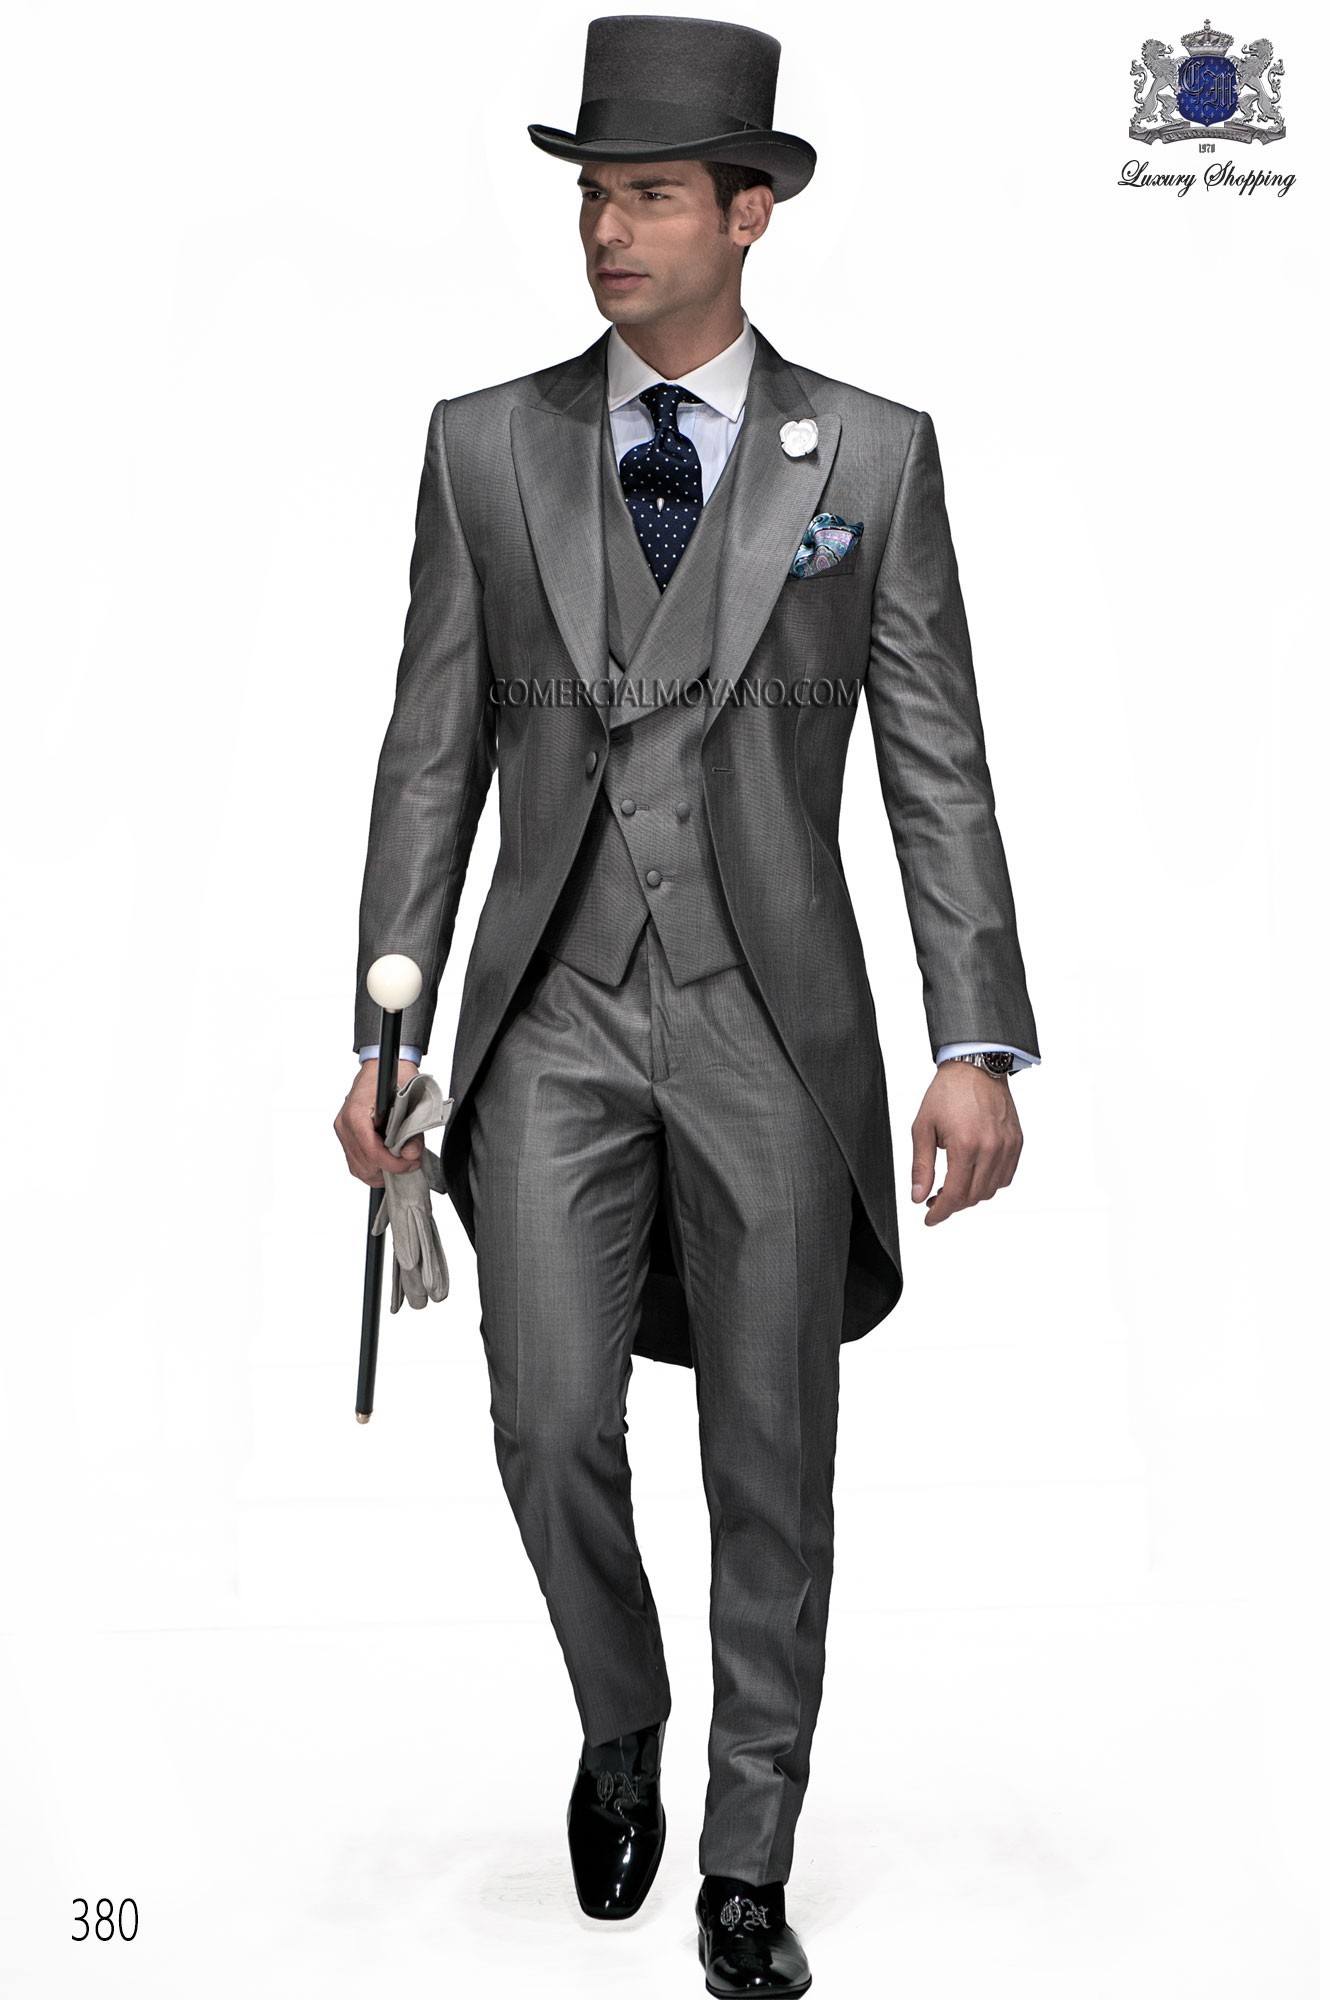 Traje de novio gris modelo: 380 Mario Moyano colección Gentleman